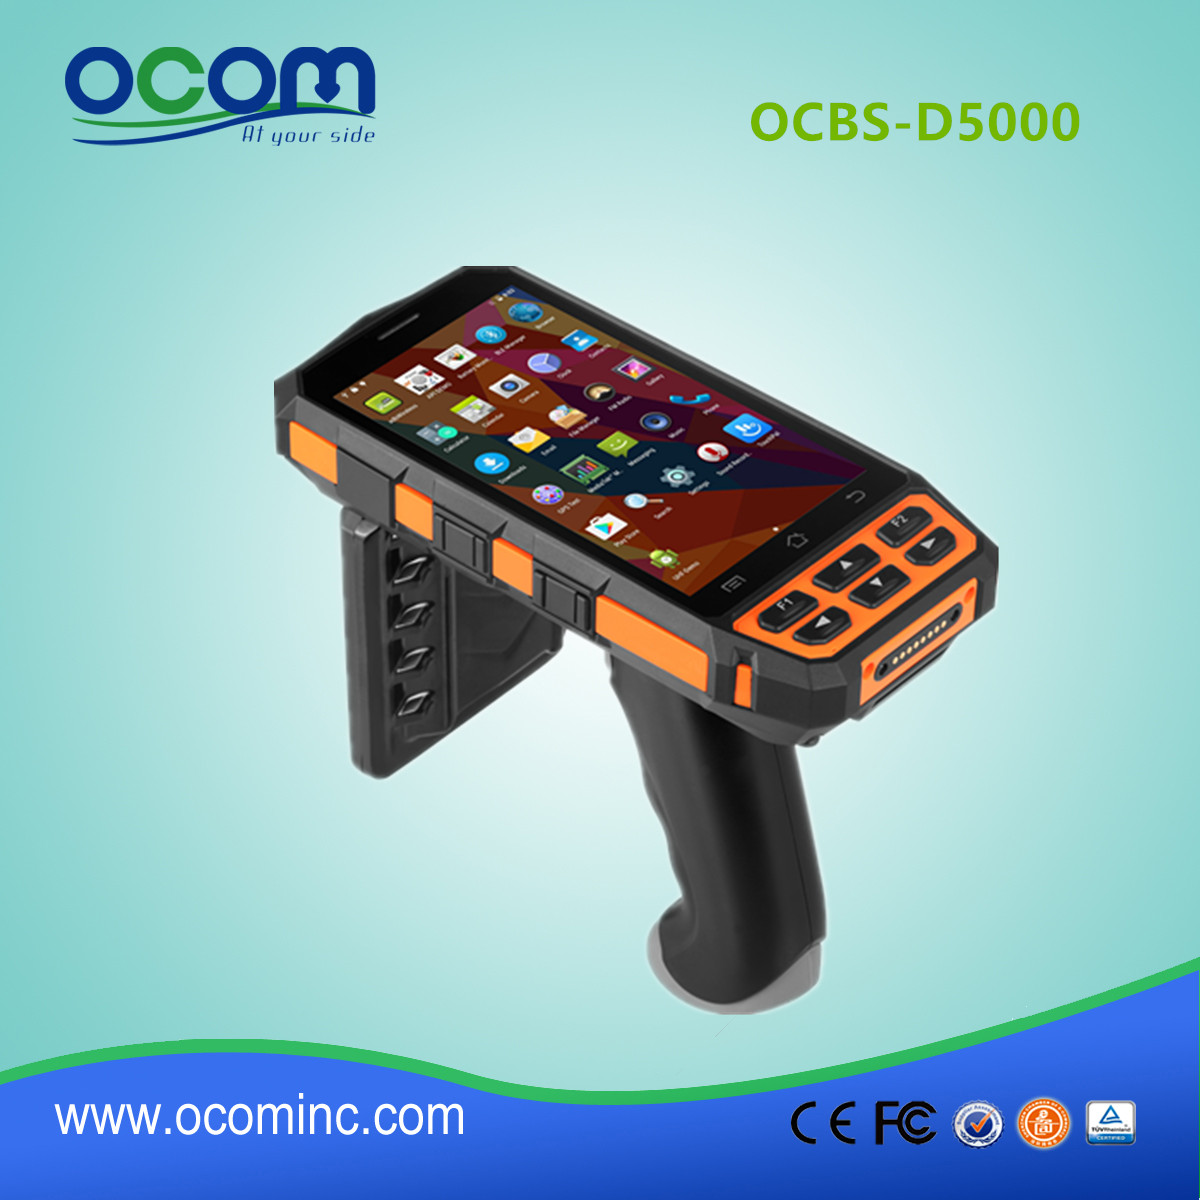 Nieuw model OCBS-D5000 Android industriële handheld-terminal